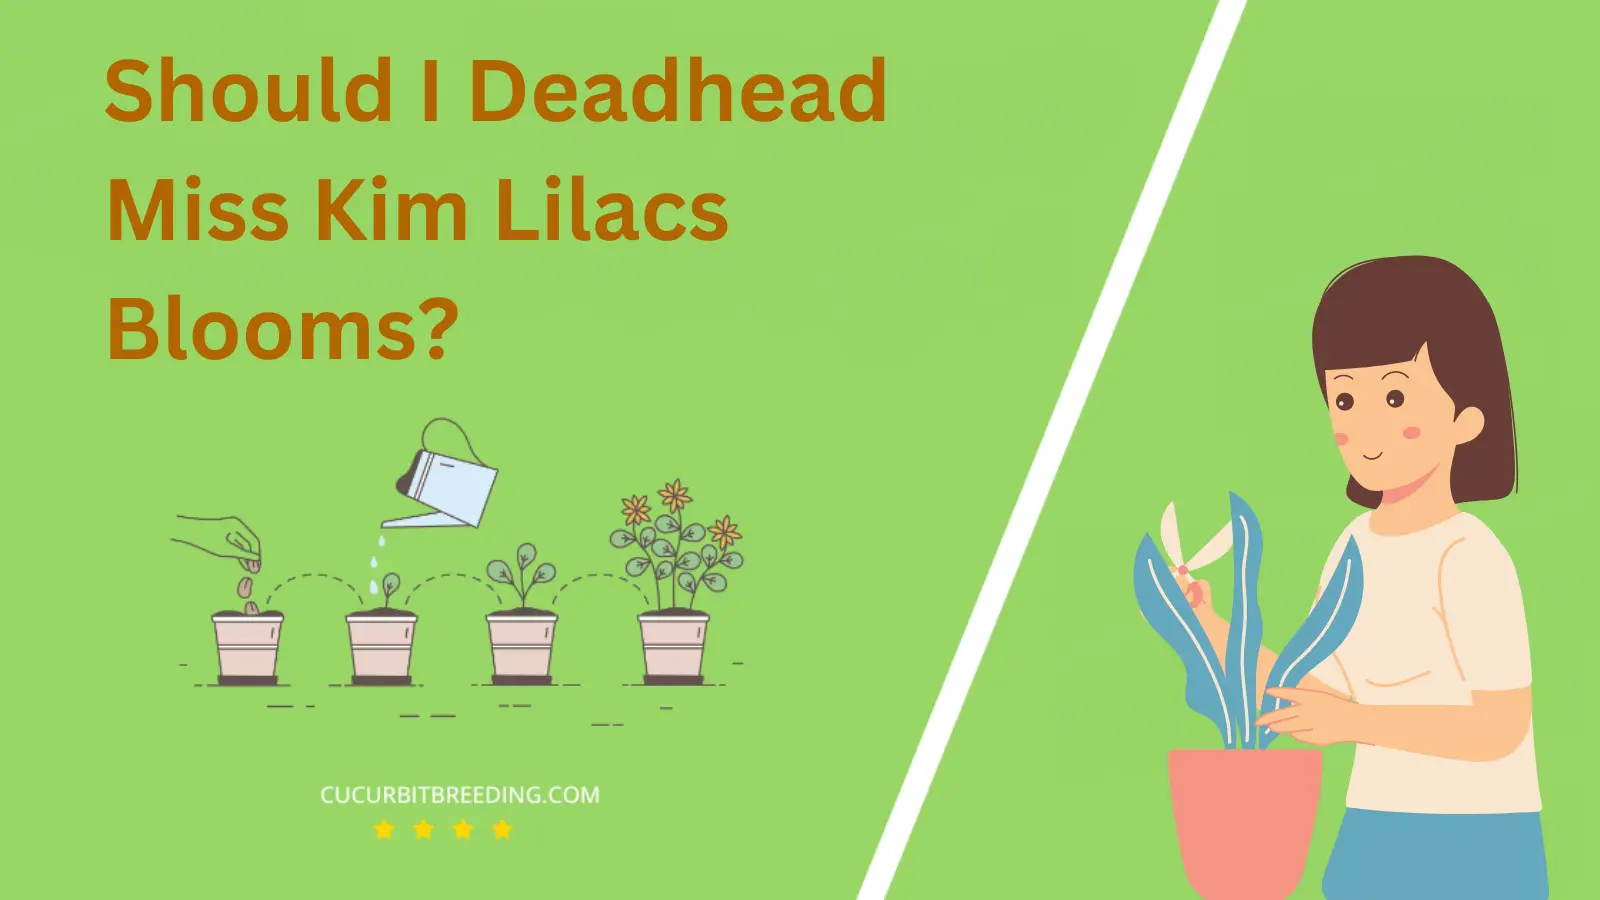 Should I Deadhead Miss Kim Lilacs Blooms?